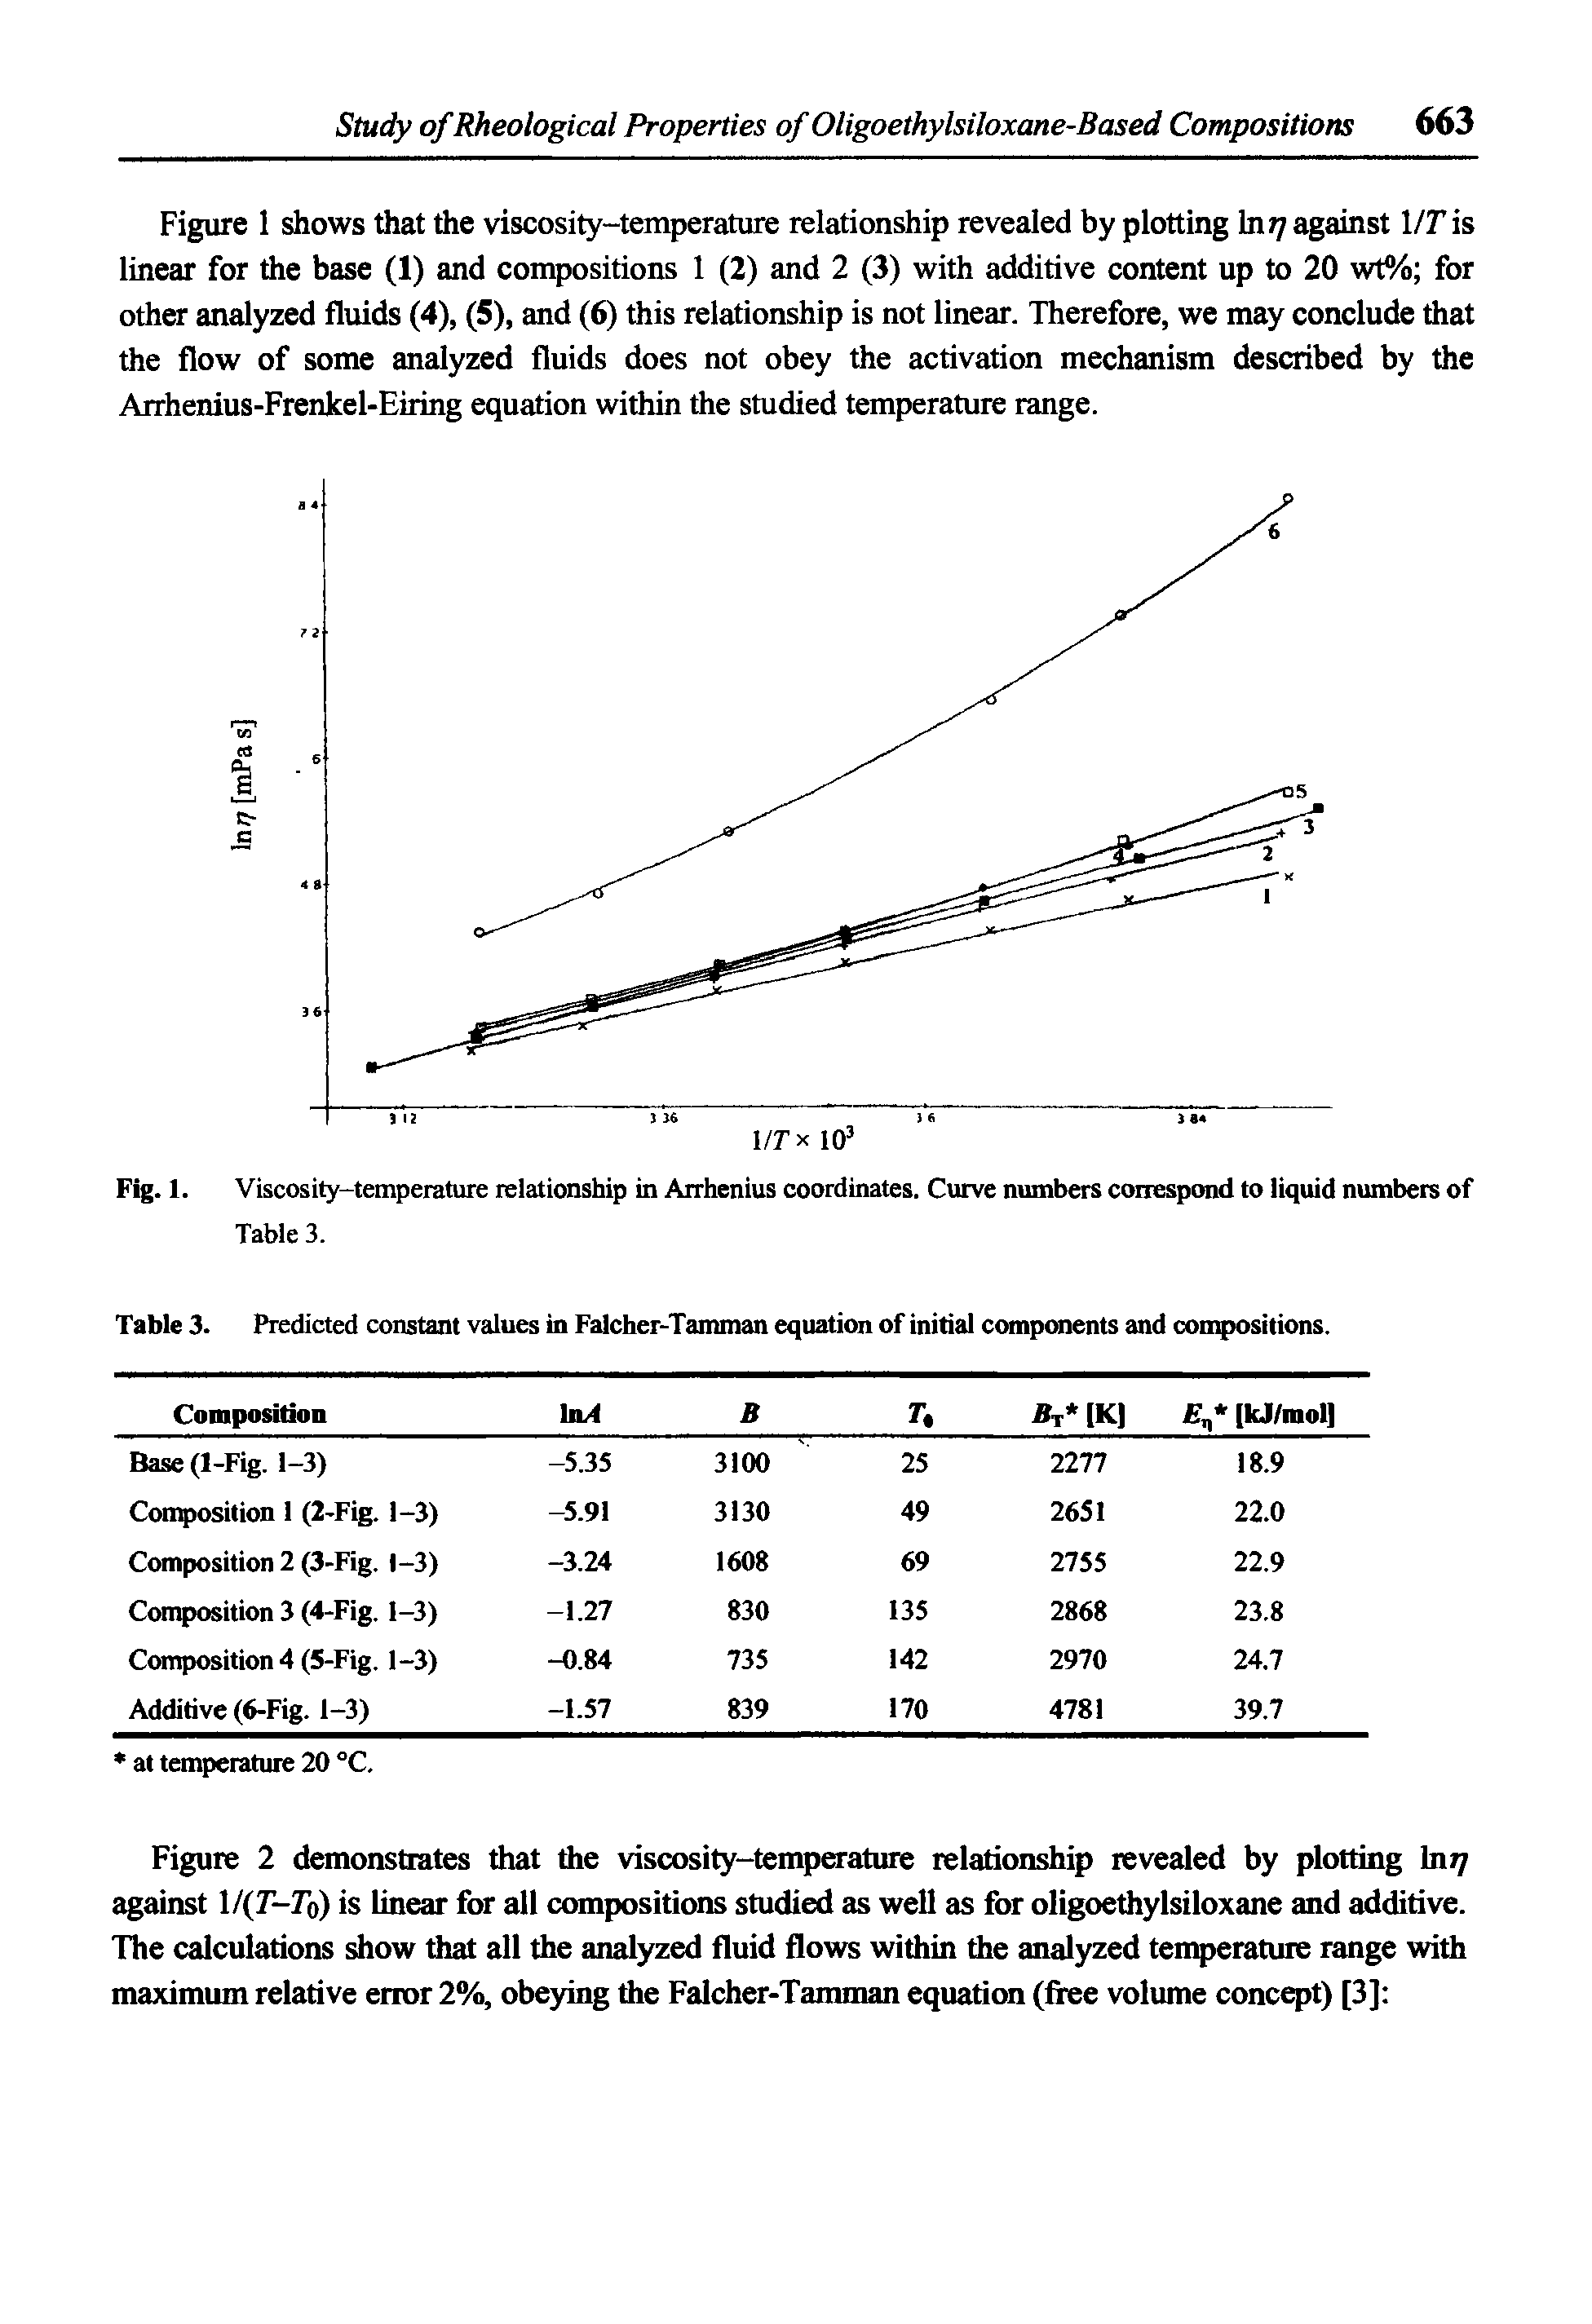 Fig. 1. Viscosity-temperature relationship in Arrhenius coordinates. Curve numbers correspond to liquid numbers of Table 3.